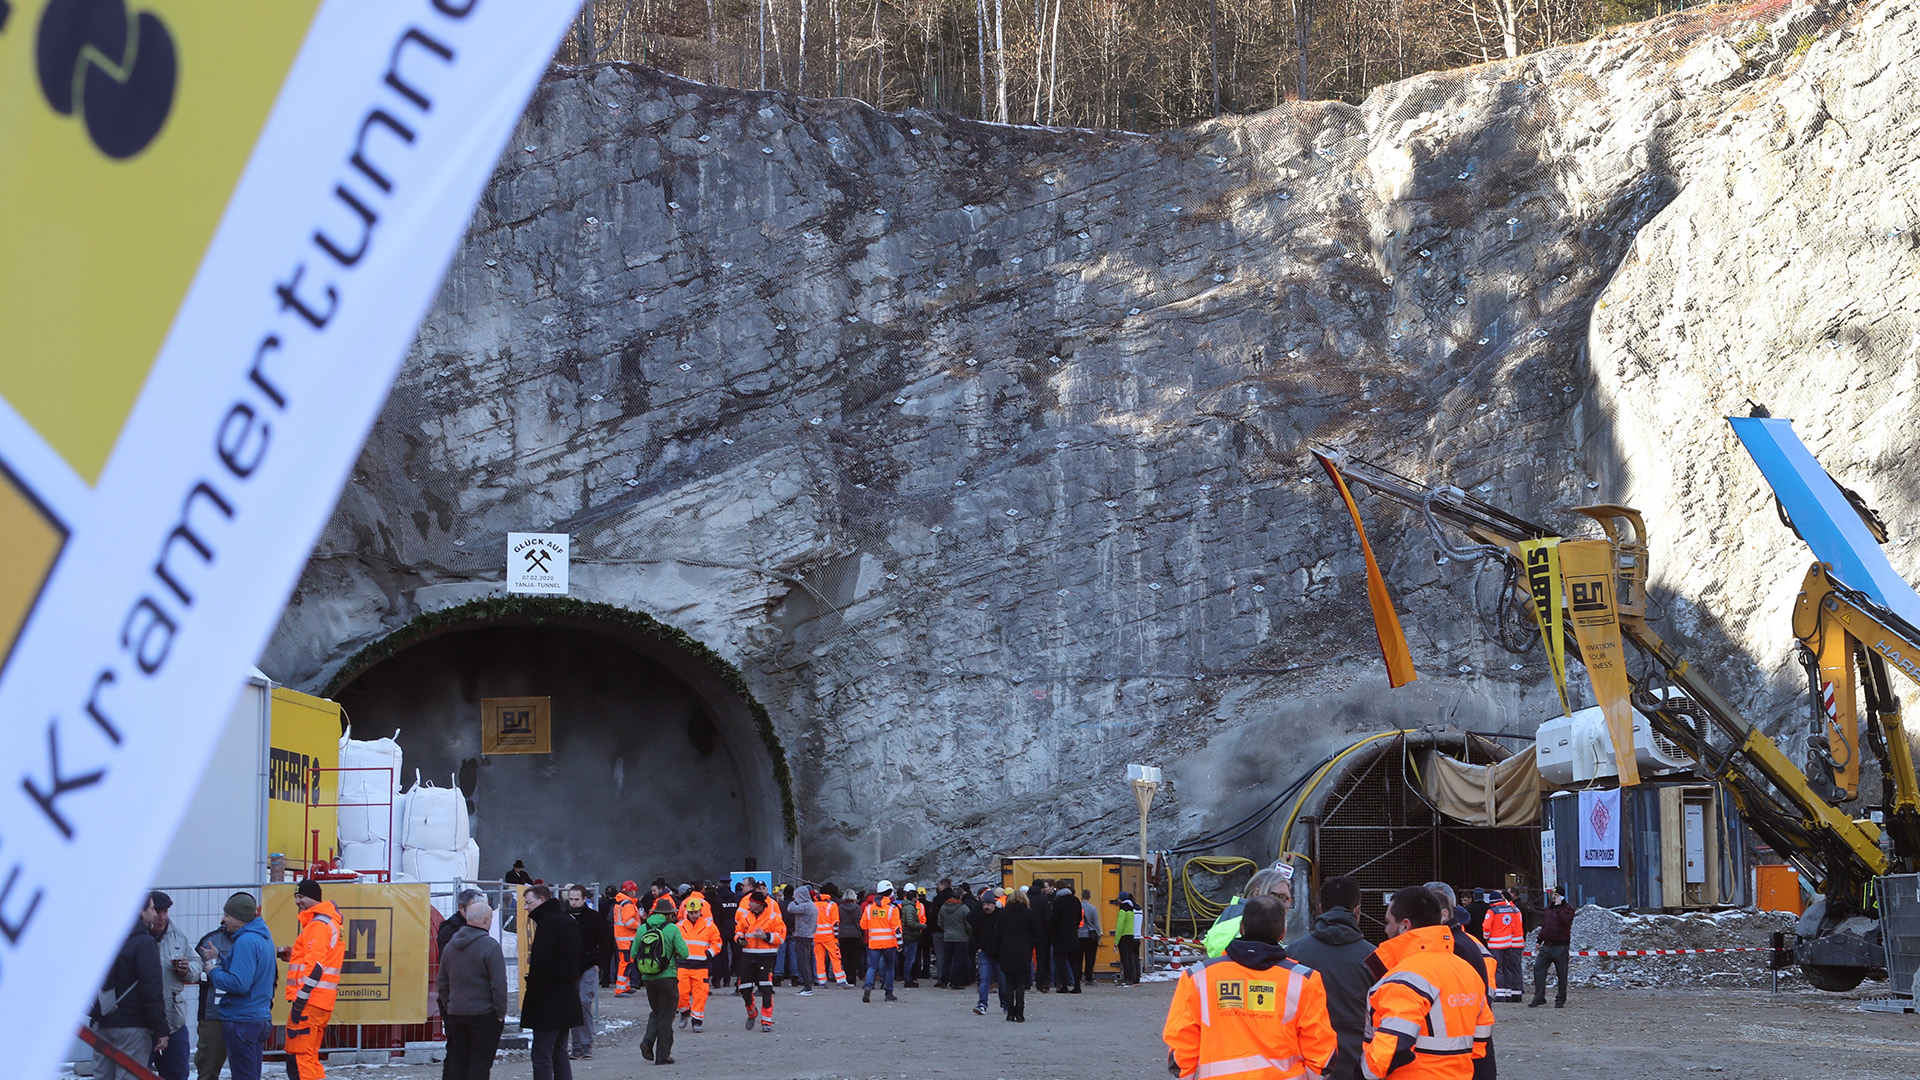 Arbeiter und Gäste stehen nach dem offiziellen Tunnelanschlag vor dem zukünftigen Nordportal des Kramertunnels in Garmisch-Partenkirchen. (Archivbild: 07.02.2020) | picture alliance/dpa